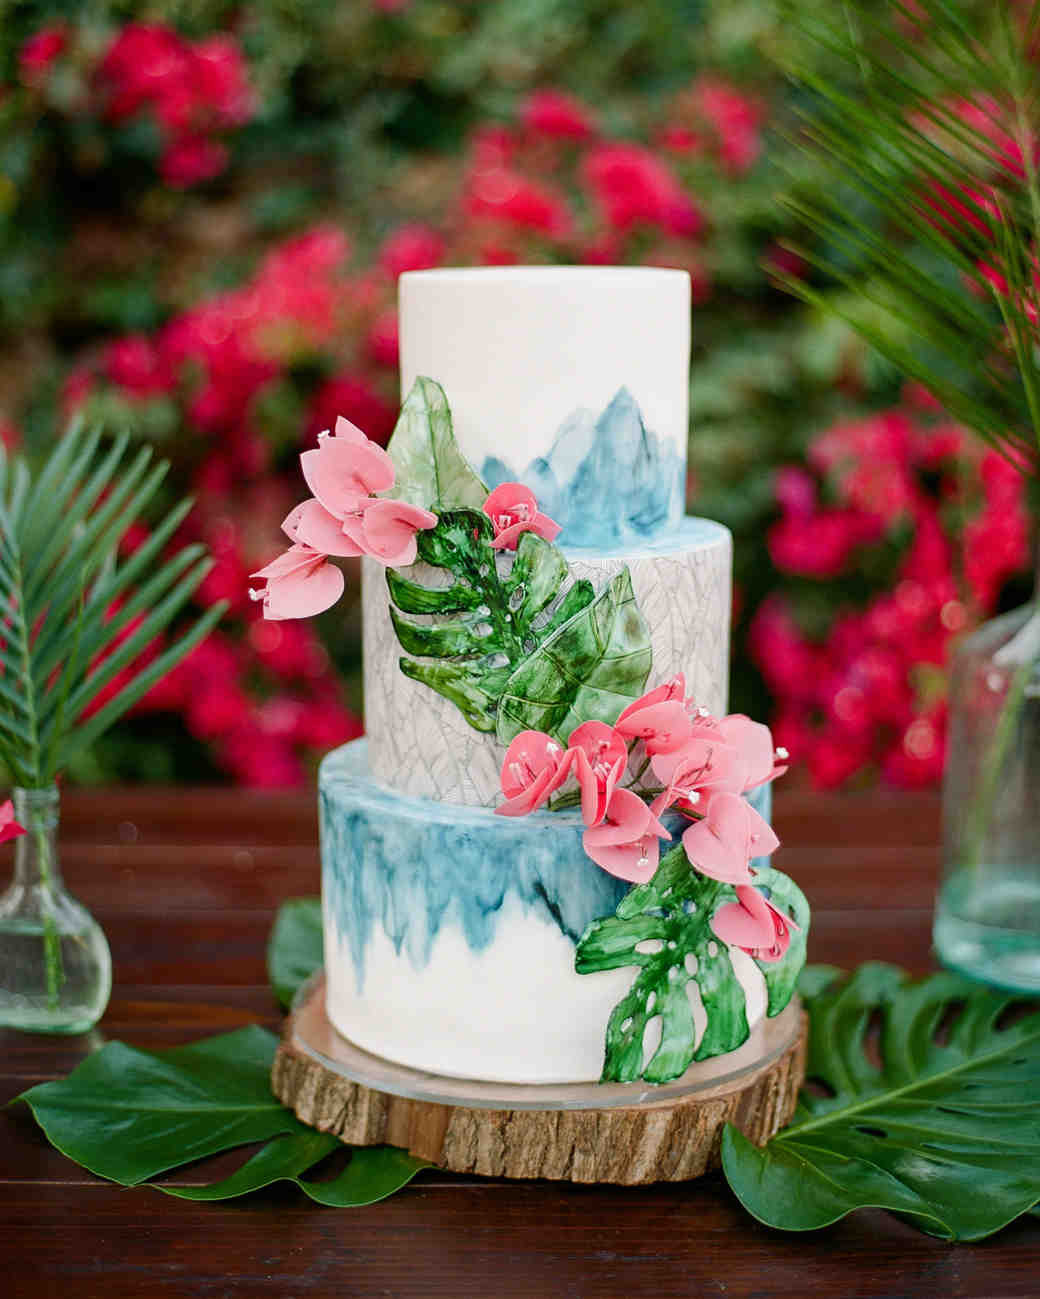 Summer Wedding Cakes
 22 Summer Wedding Cakes That Speak to the Season